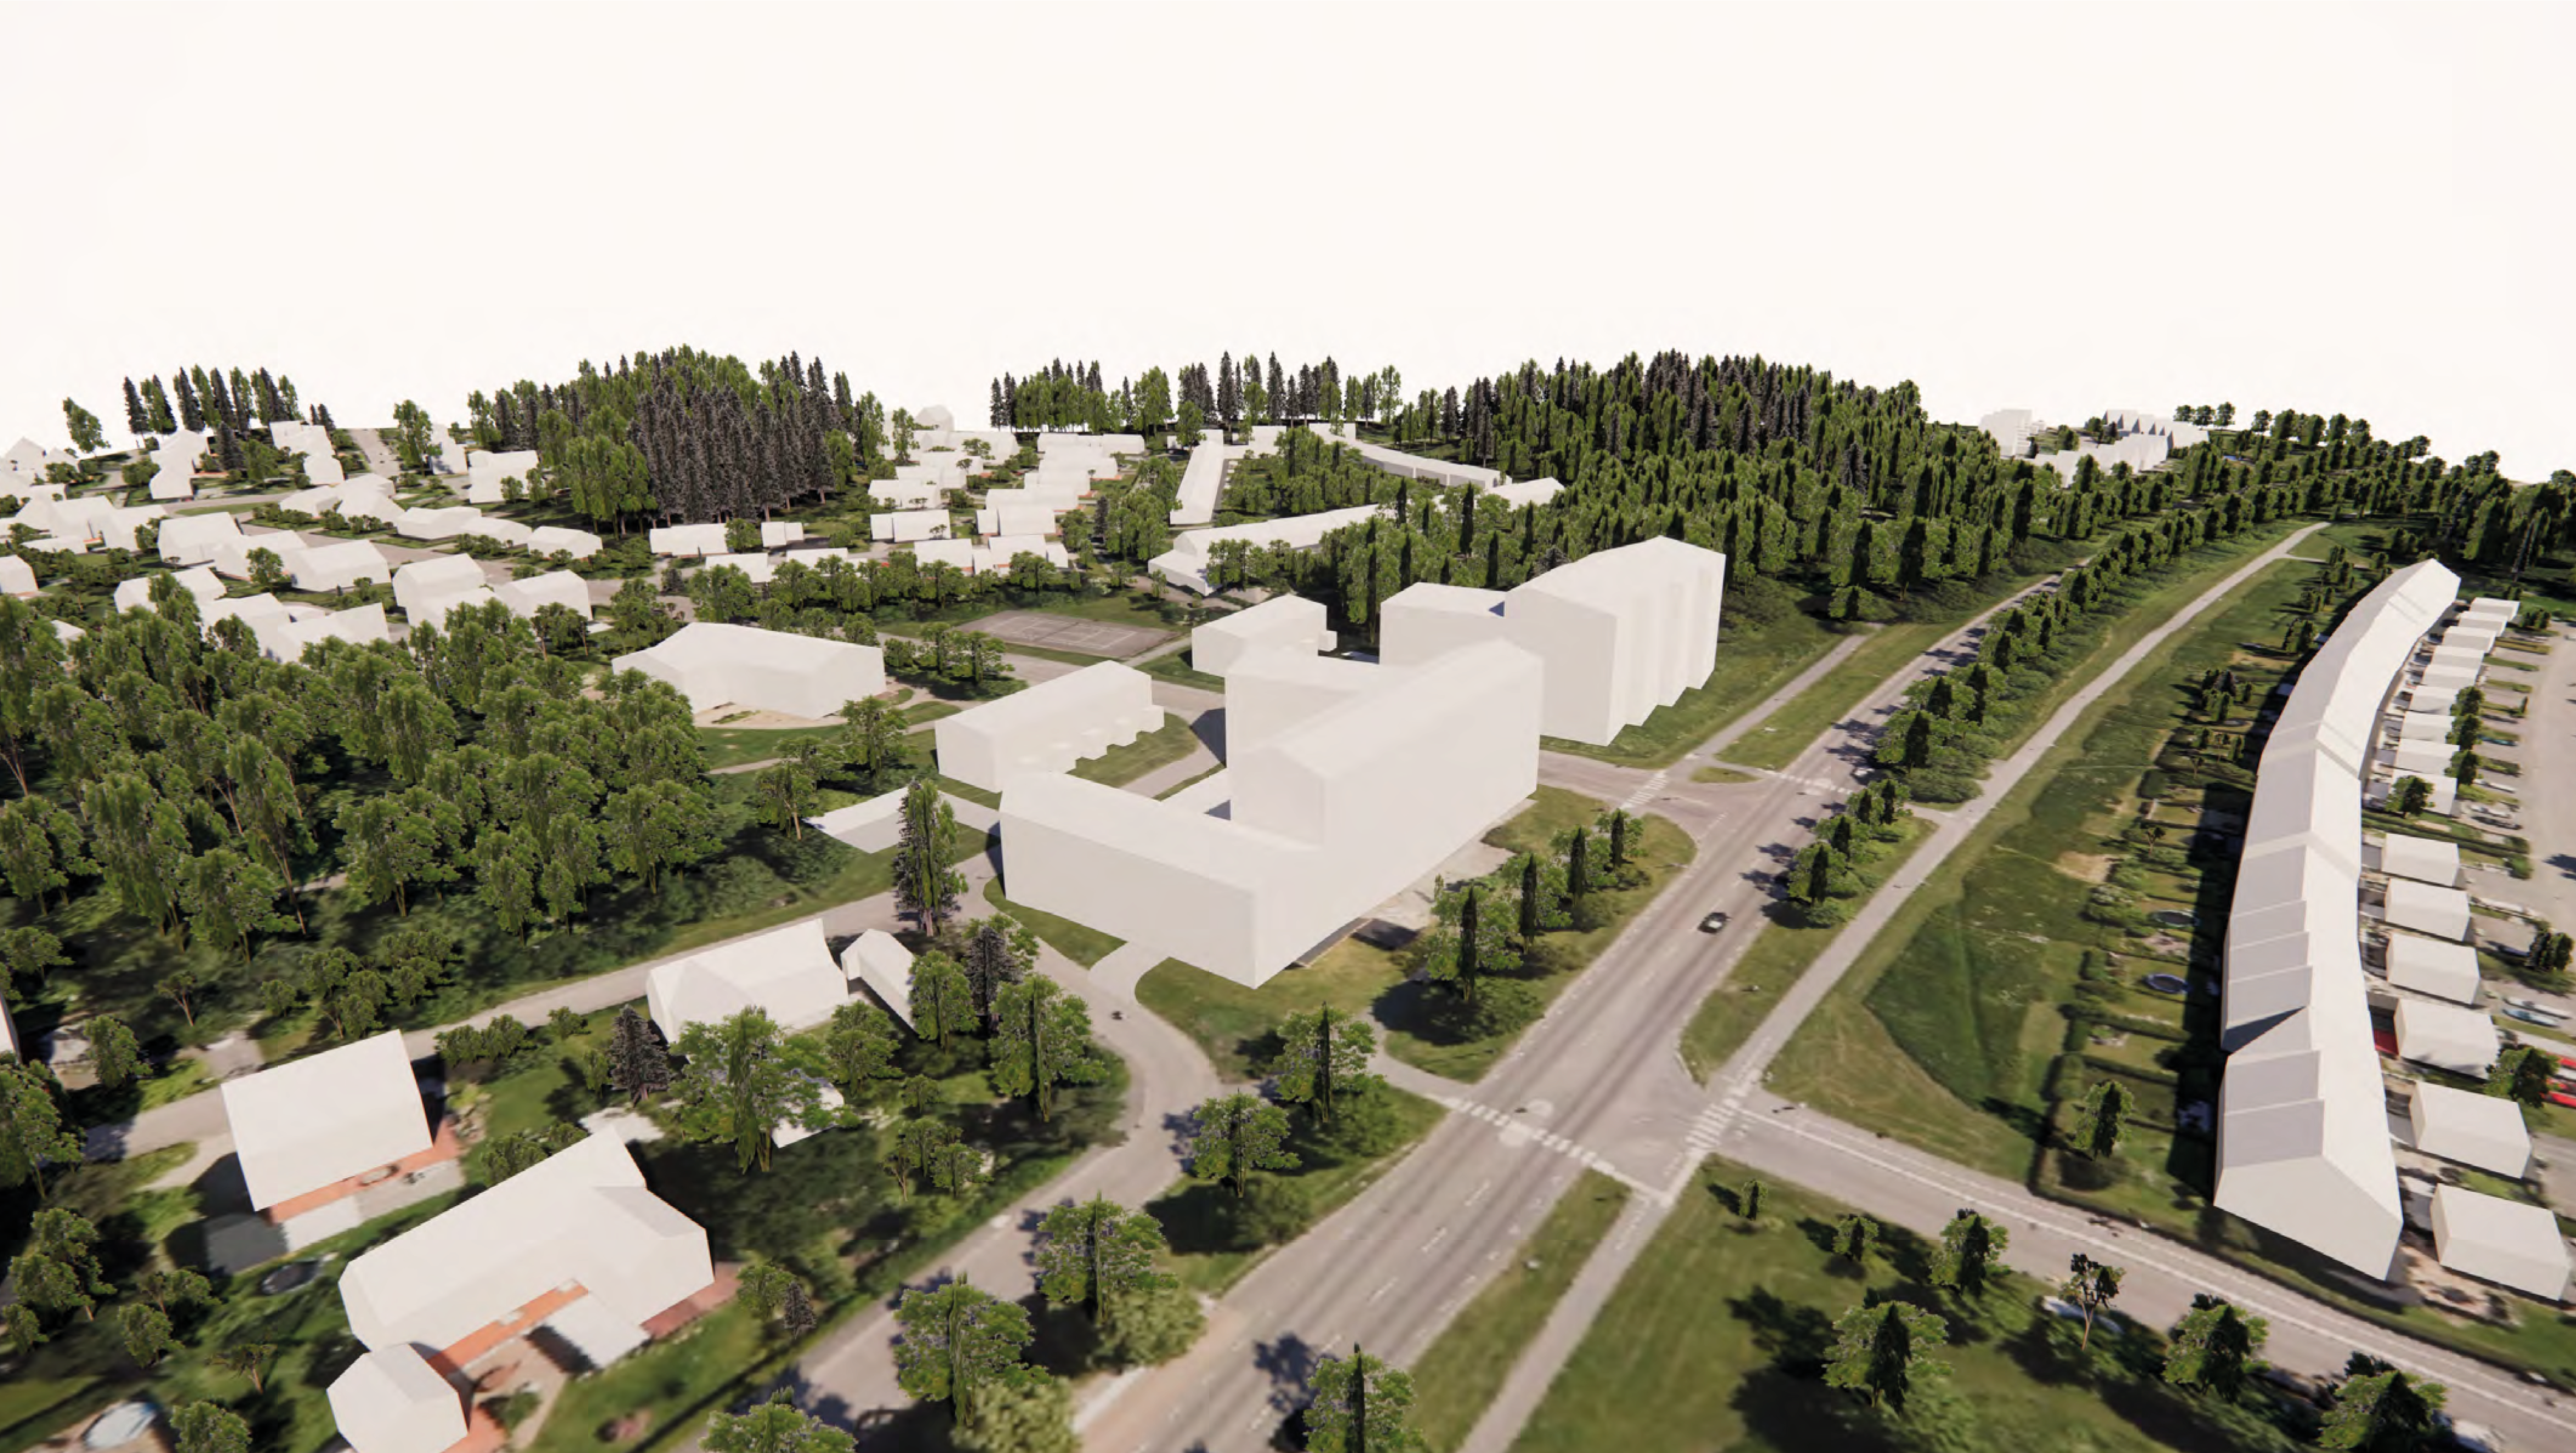 Datoranimerad vy över bostadsområde med planerad bebyggelse inritad som vita block.